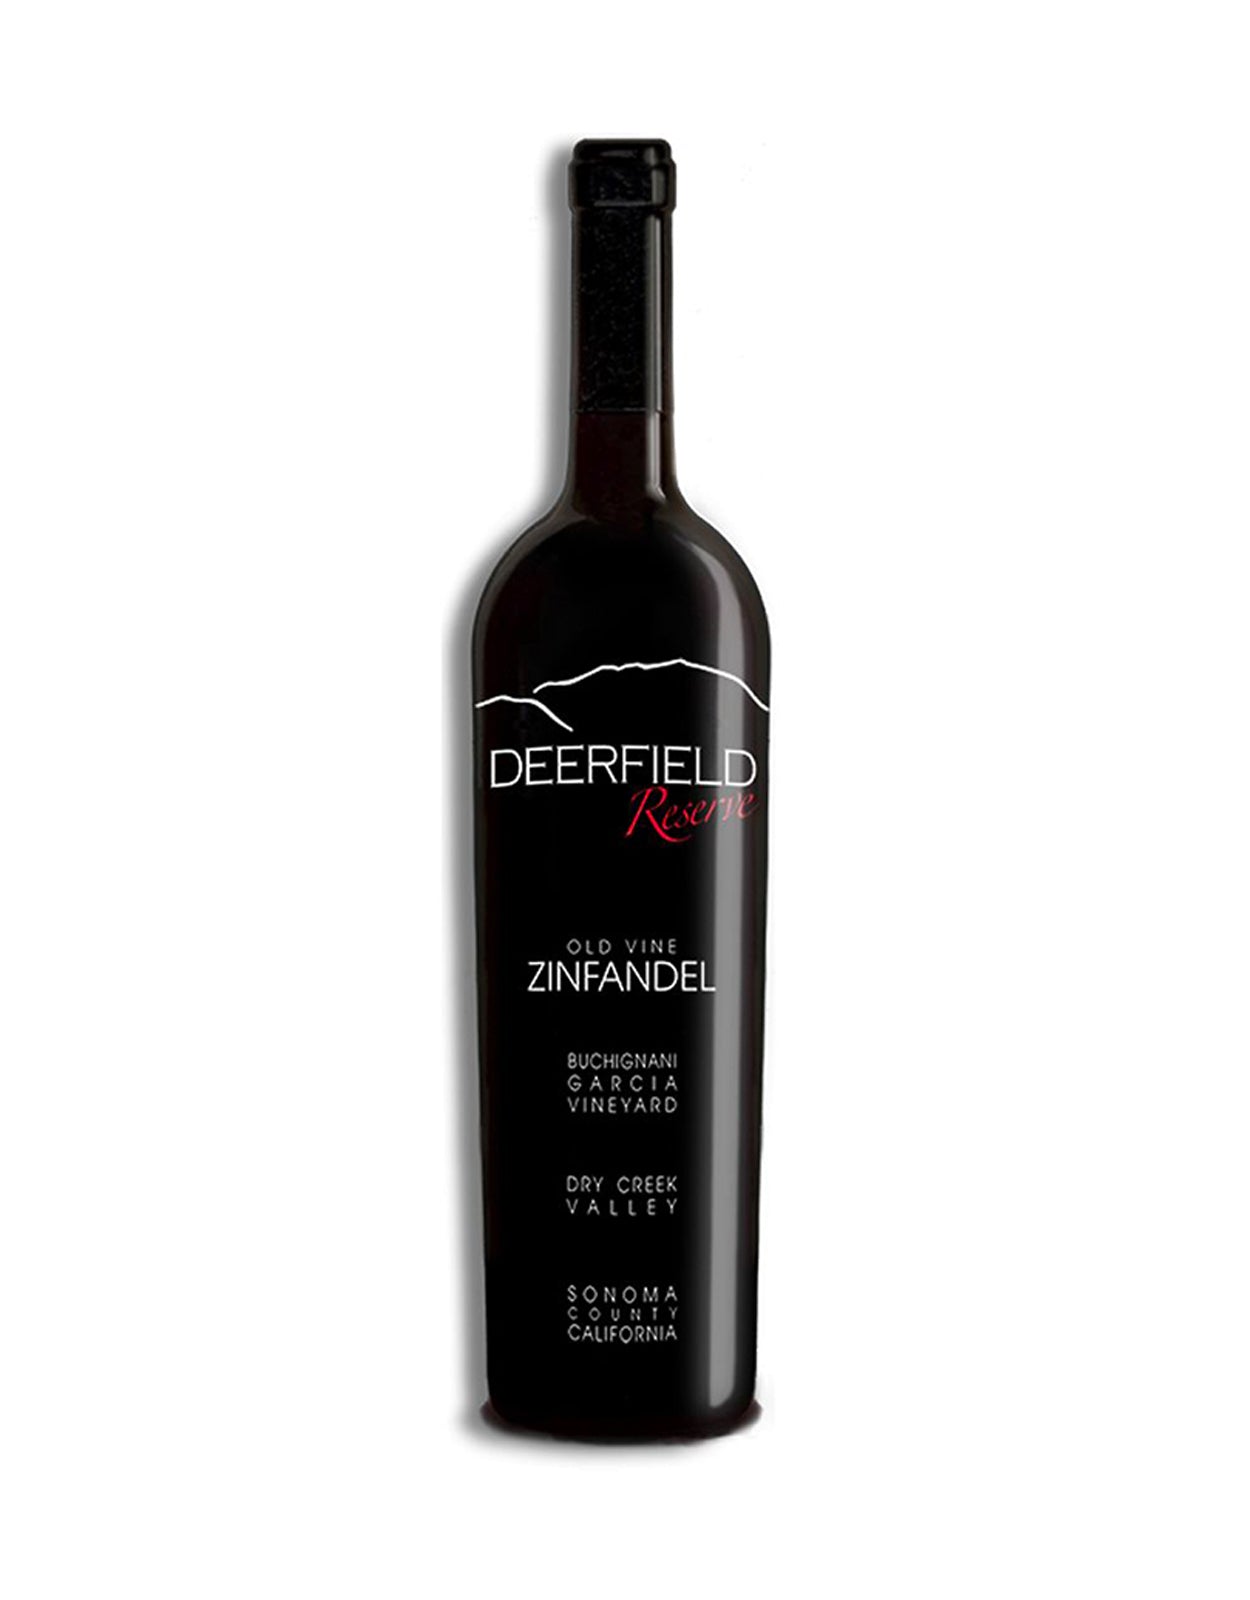 Deerfield Ranch Zinfandel Old Vine 2013